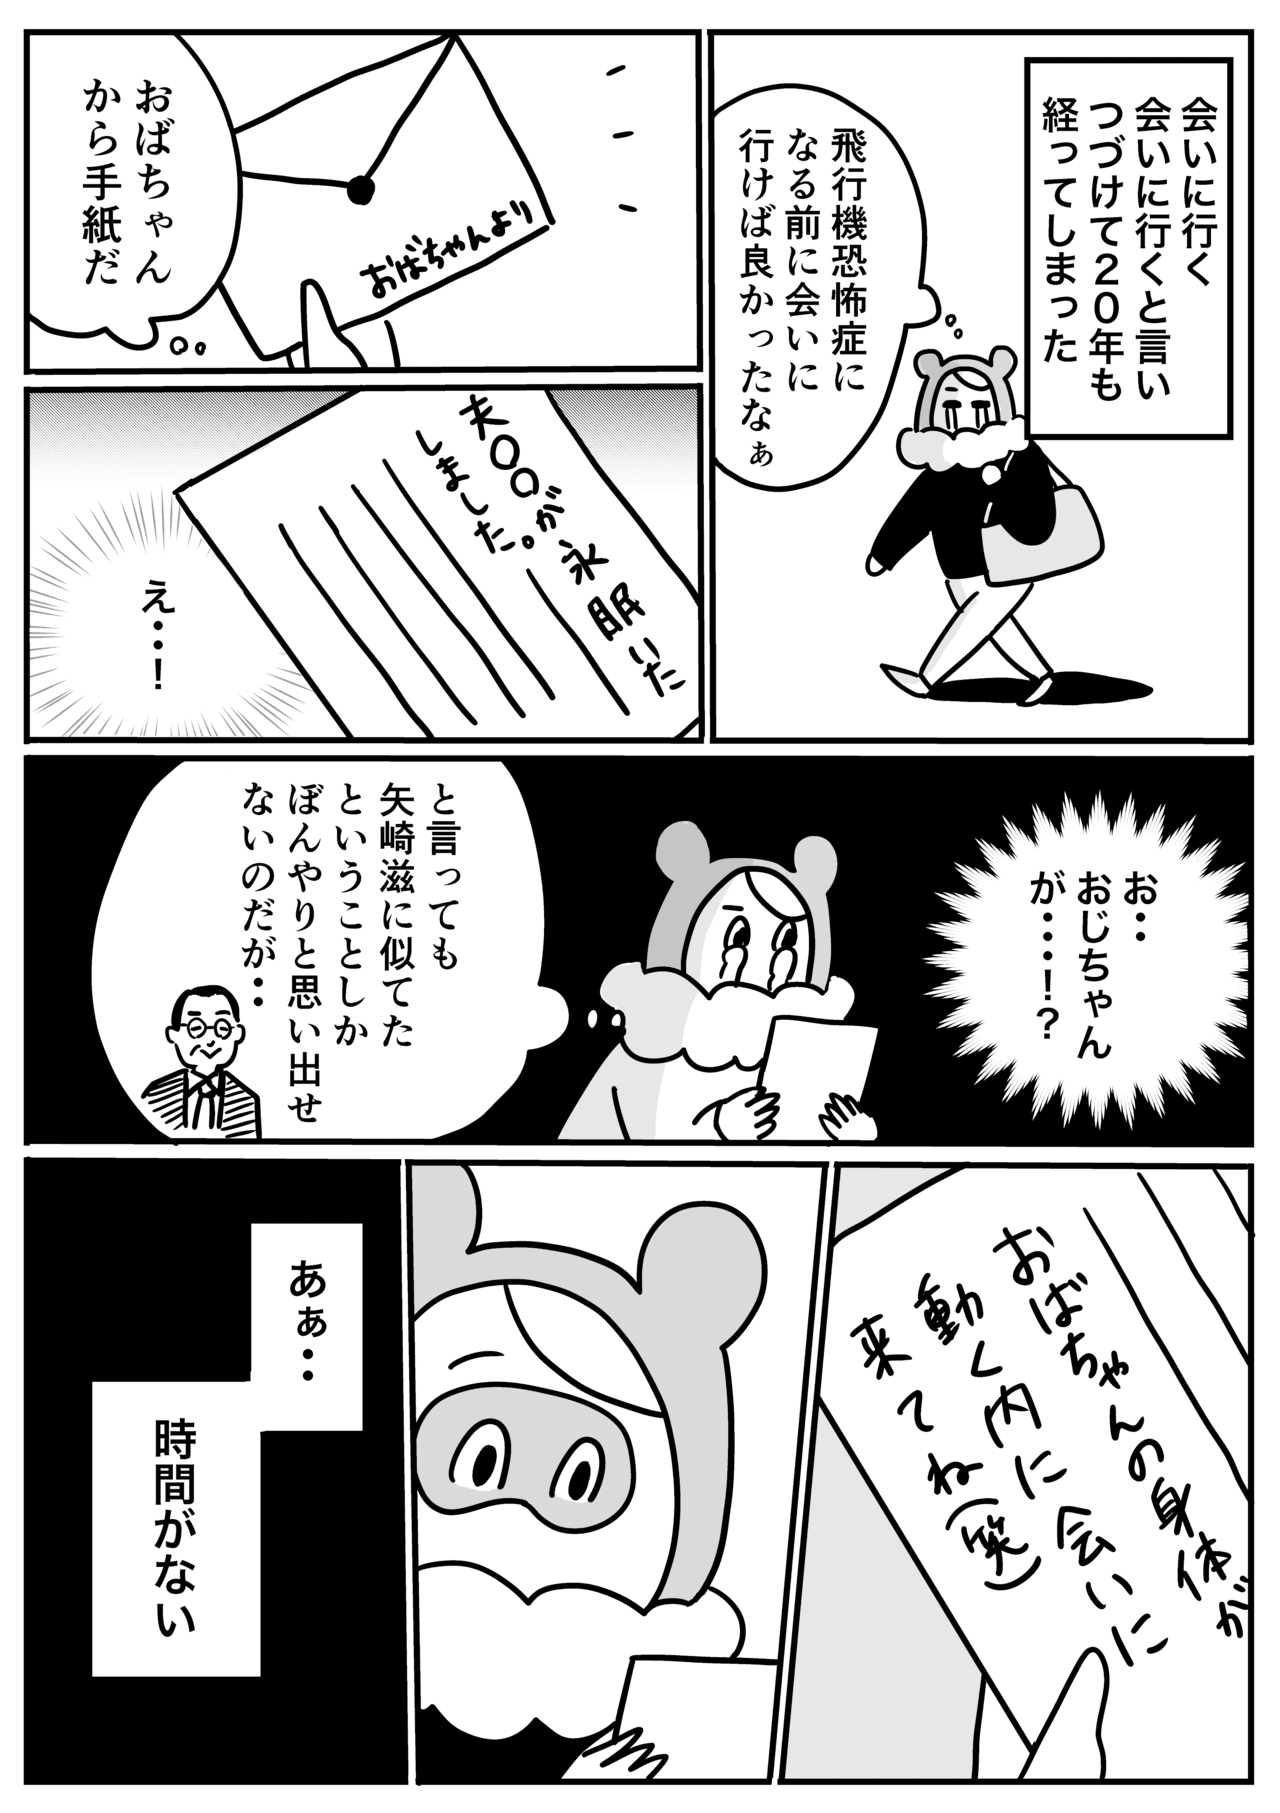 コミック3_003